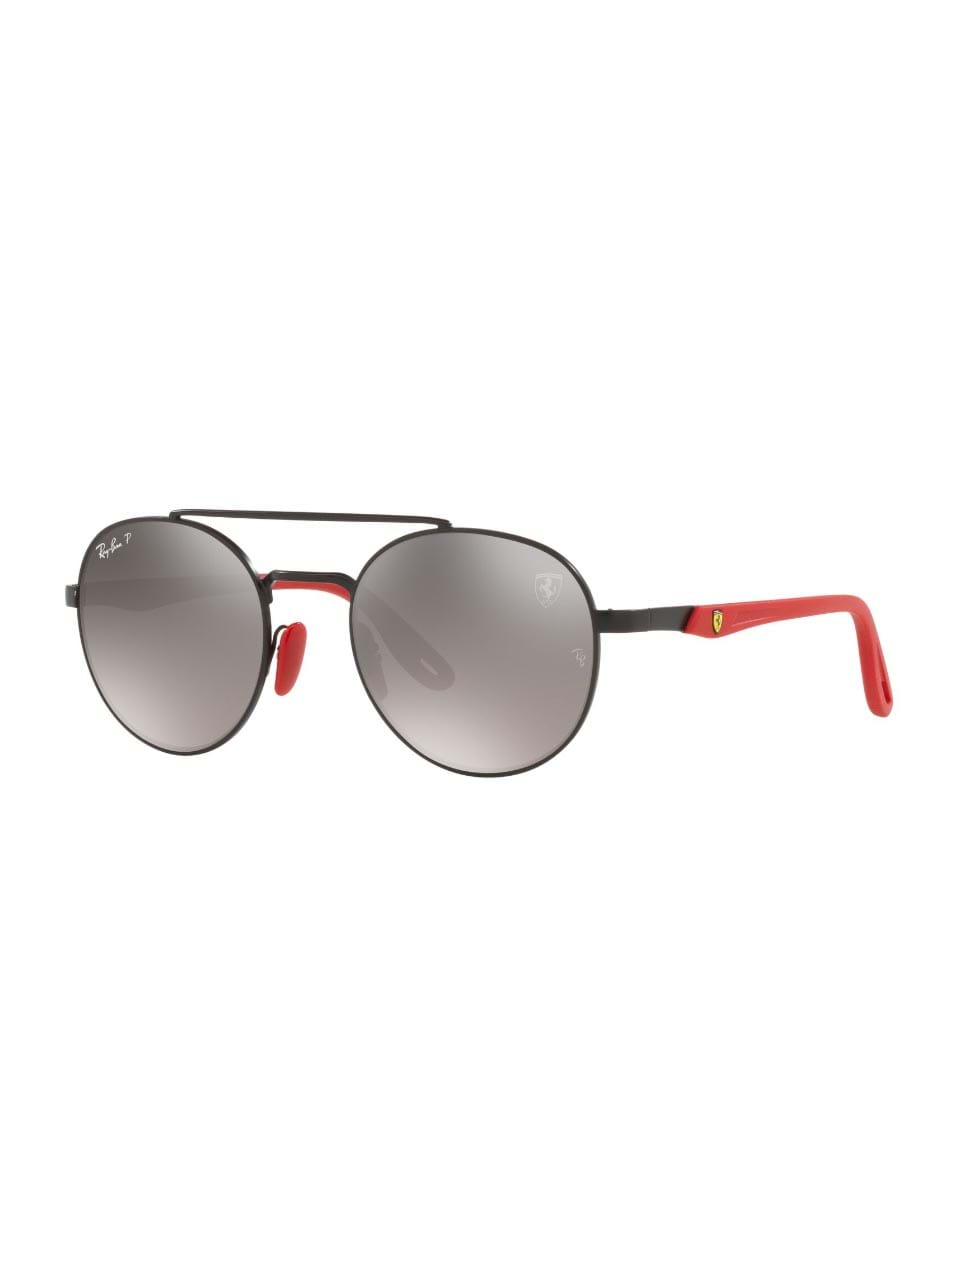 12856円 【現金特価】 サングラス ハット コレクション レディース アイウェア アクセサリー Sunglasses 0HU1008 SHINY SILVER LIGHT BLUE MIRROR